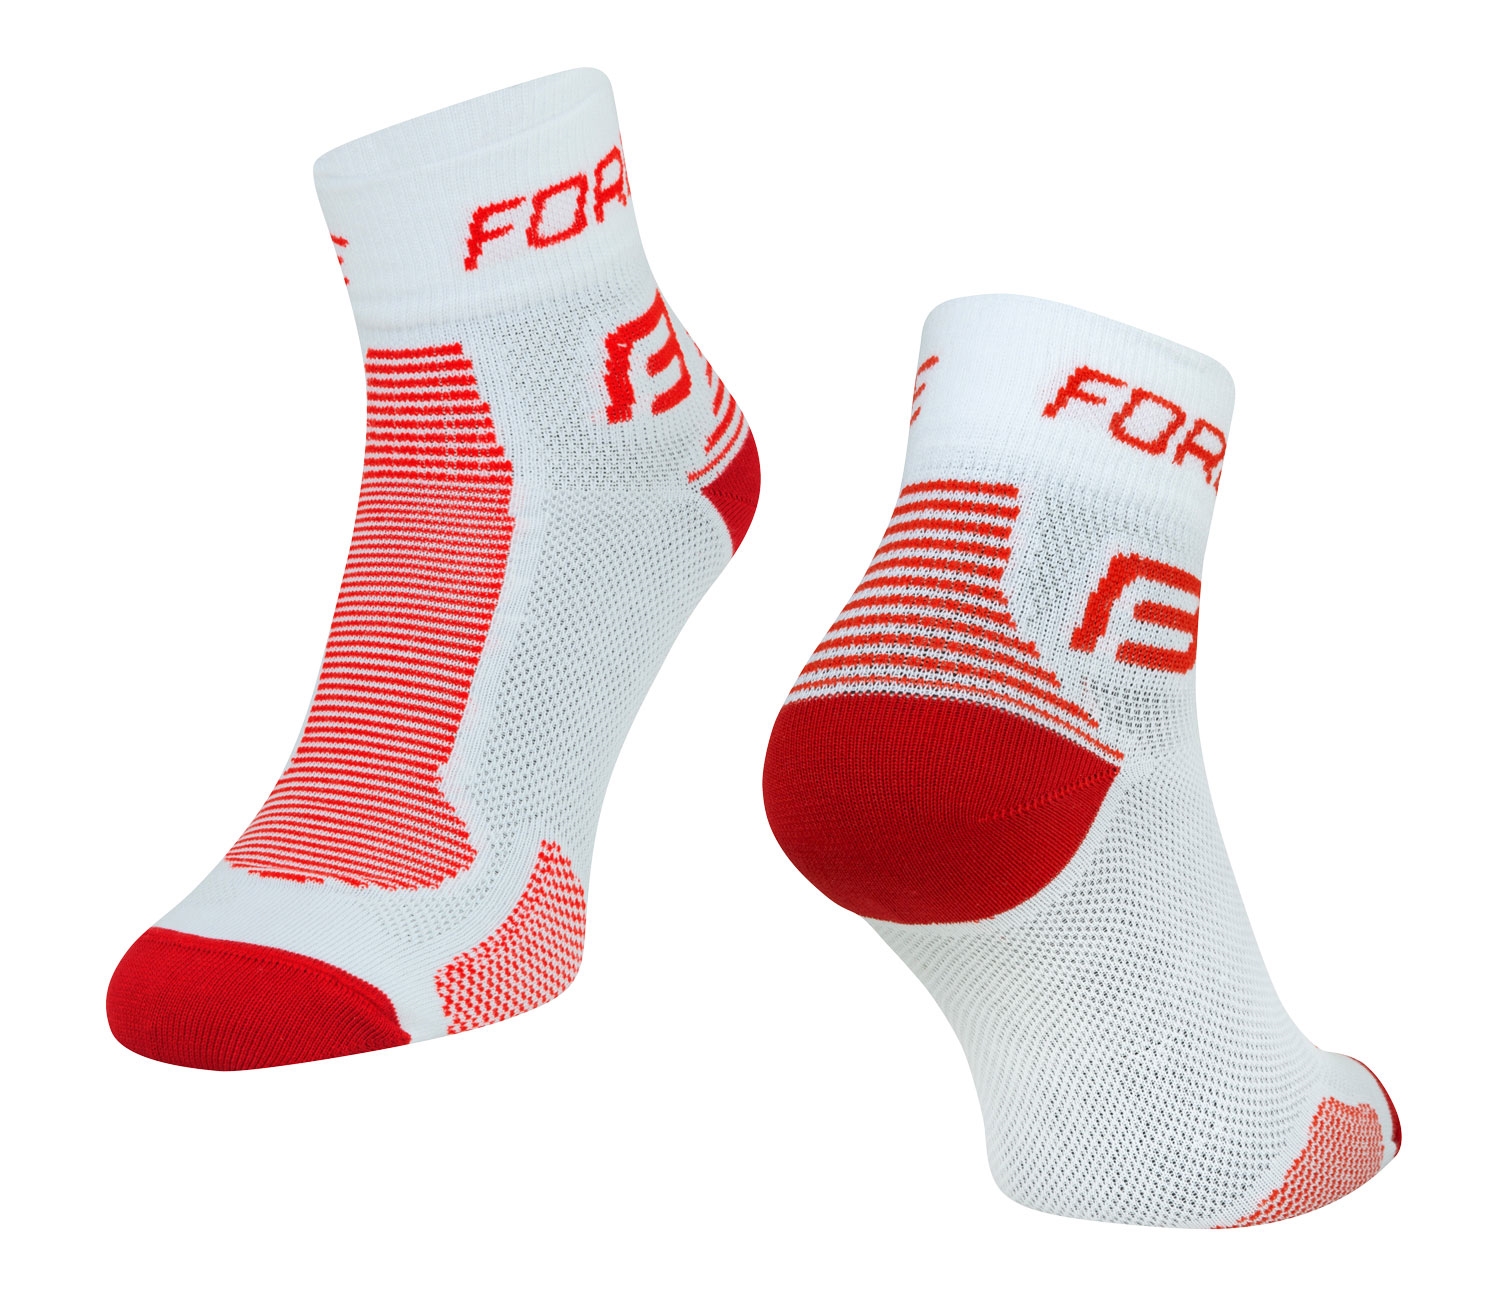 ponožky FORCE 1, bílo-červené S-M/36-41